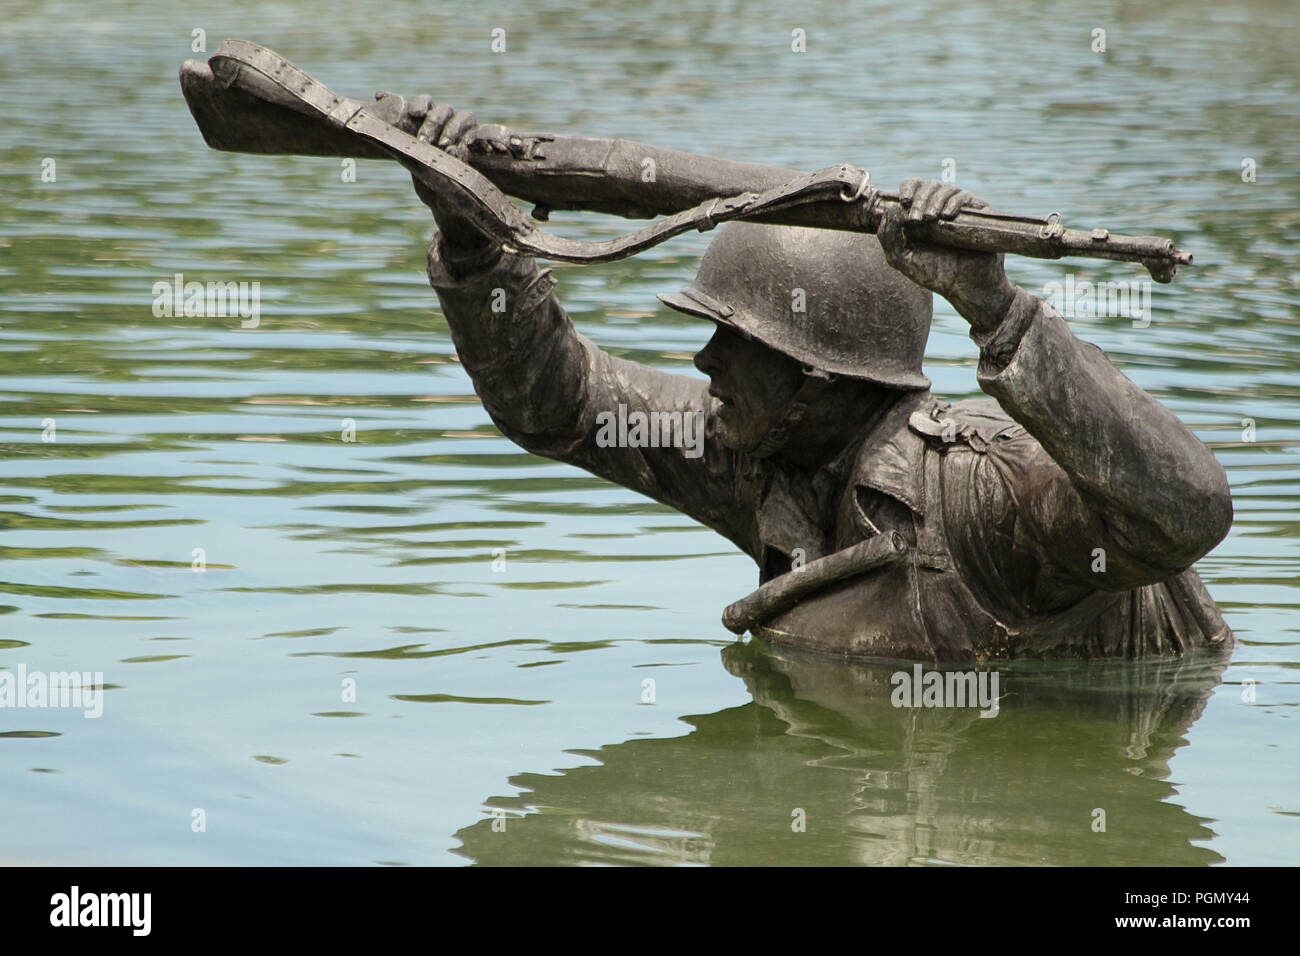 Sculptures représentant des scènes de guerre pendant l'opération Overlord en Normandie, 1944. Scène au National D-Day Memorial, va, Etats-Unis. Banque D'Images